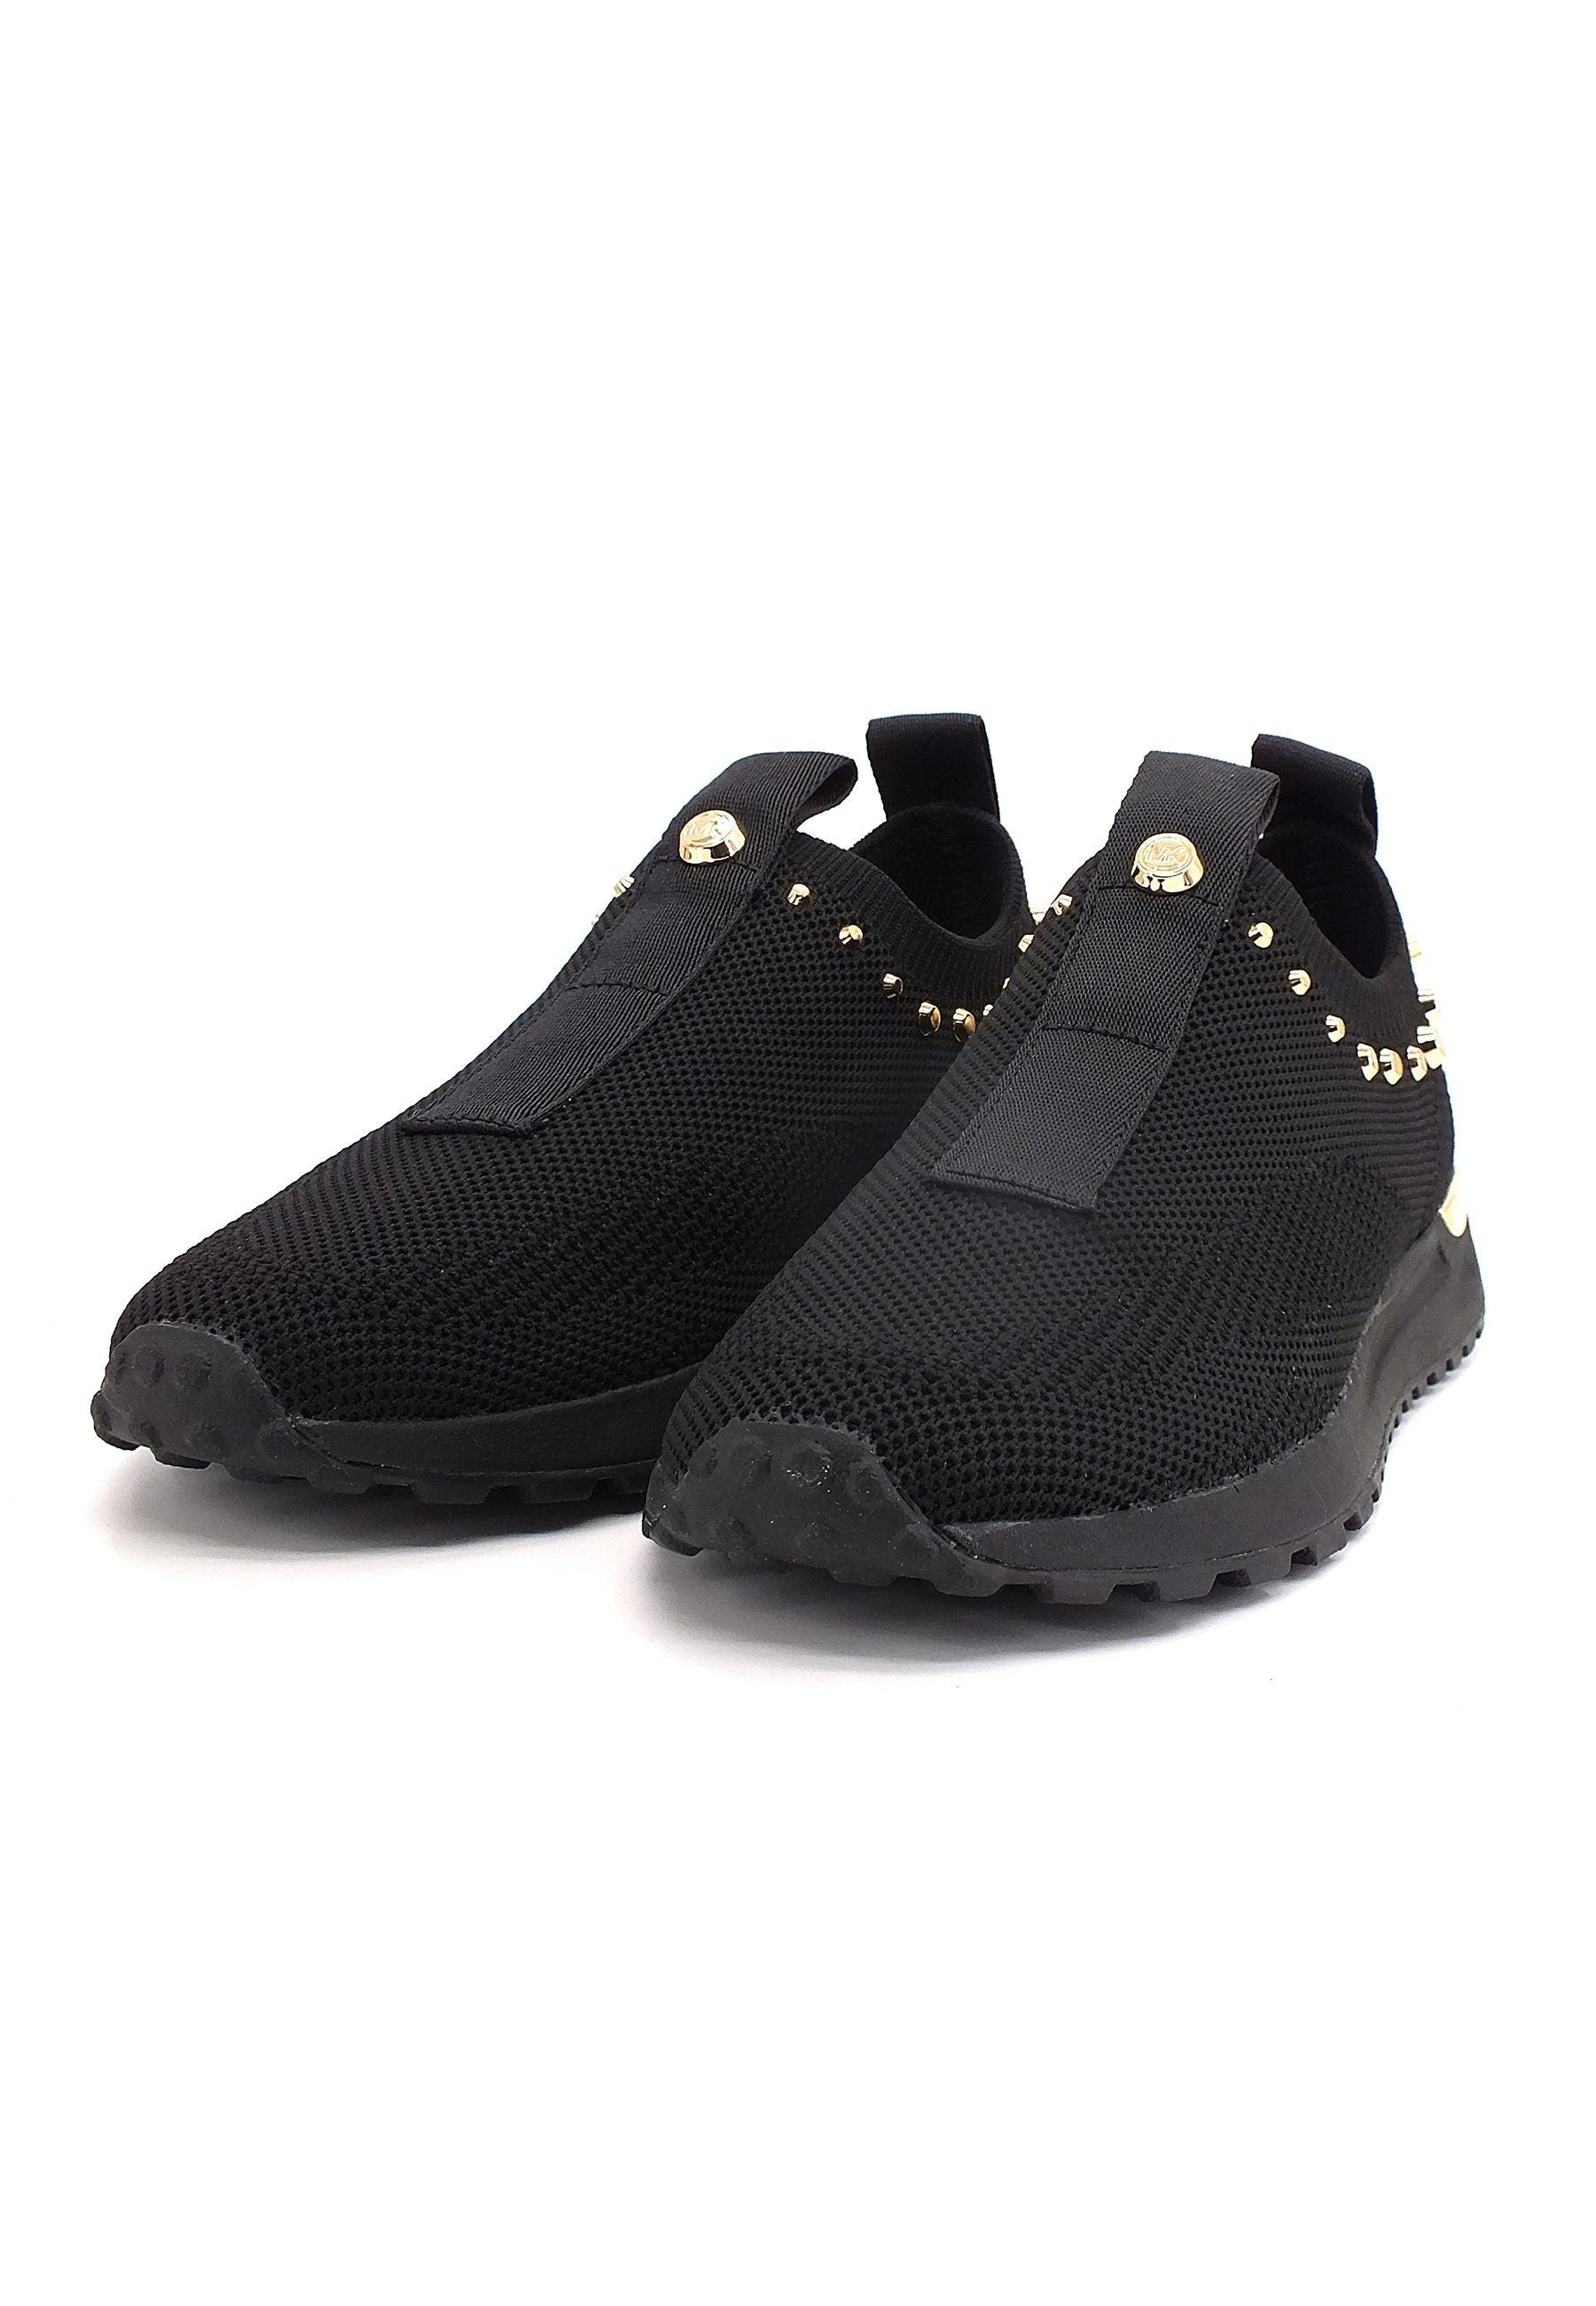 MICHAEL KORS Bodie Slip On Sneaker Donna Black 43F2BDFP1D - Sandrini Calzature e Abbigliamento